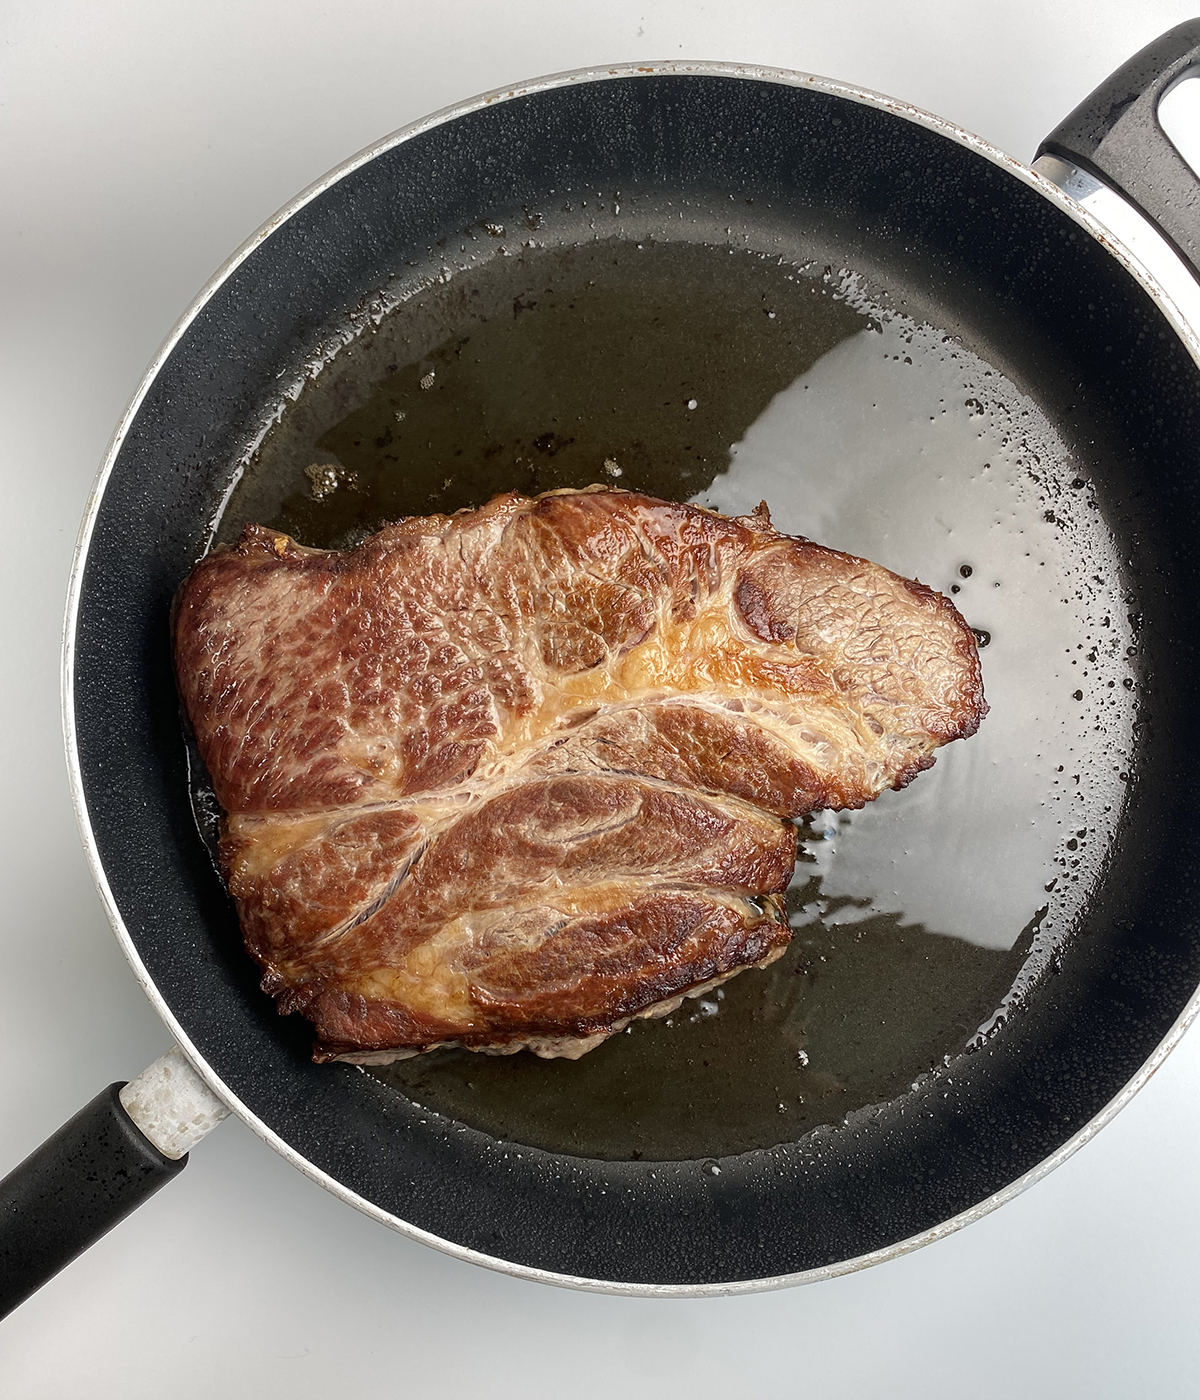 Seared chuck steak in a skillet.